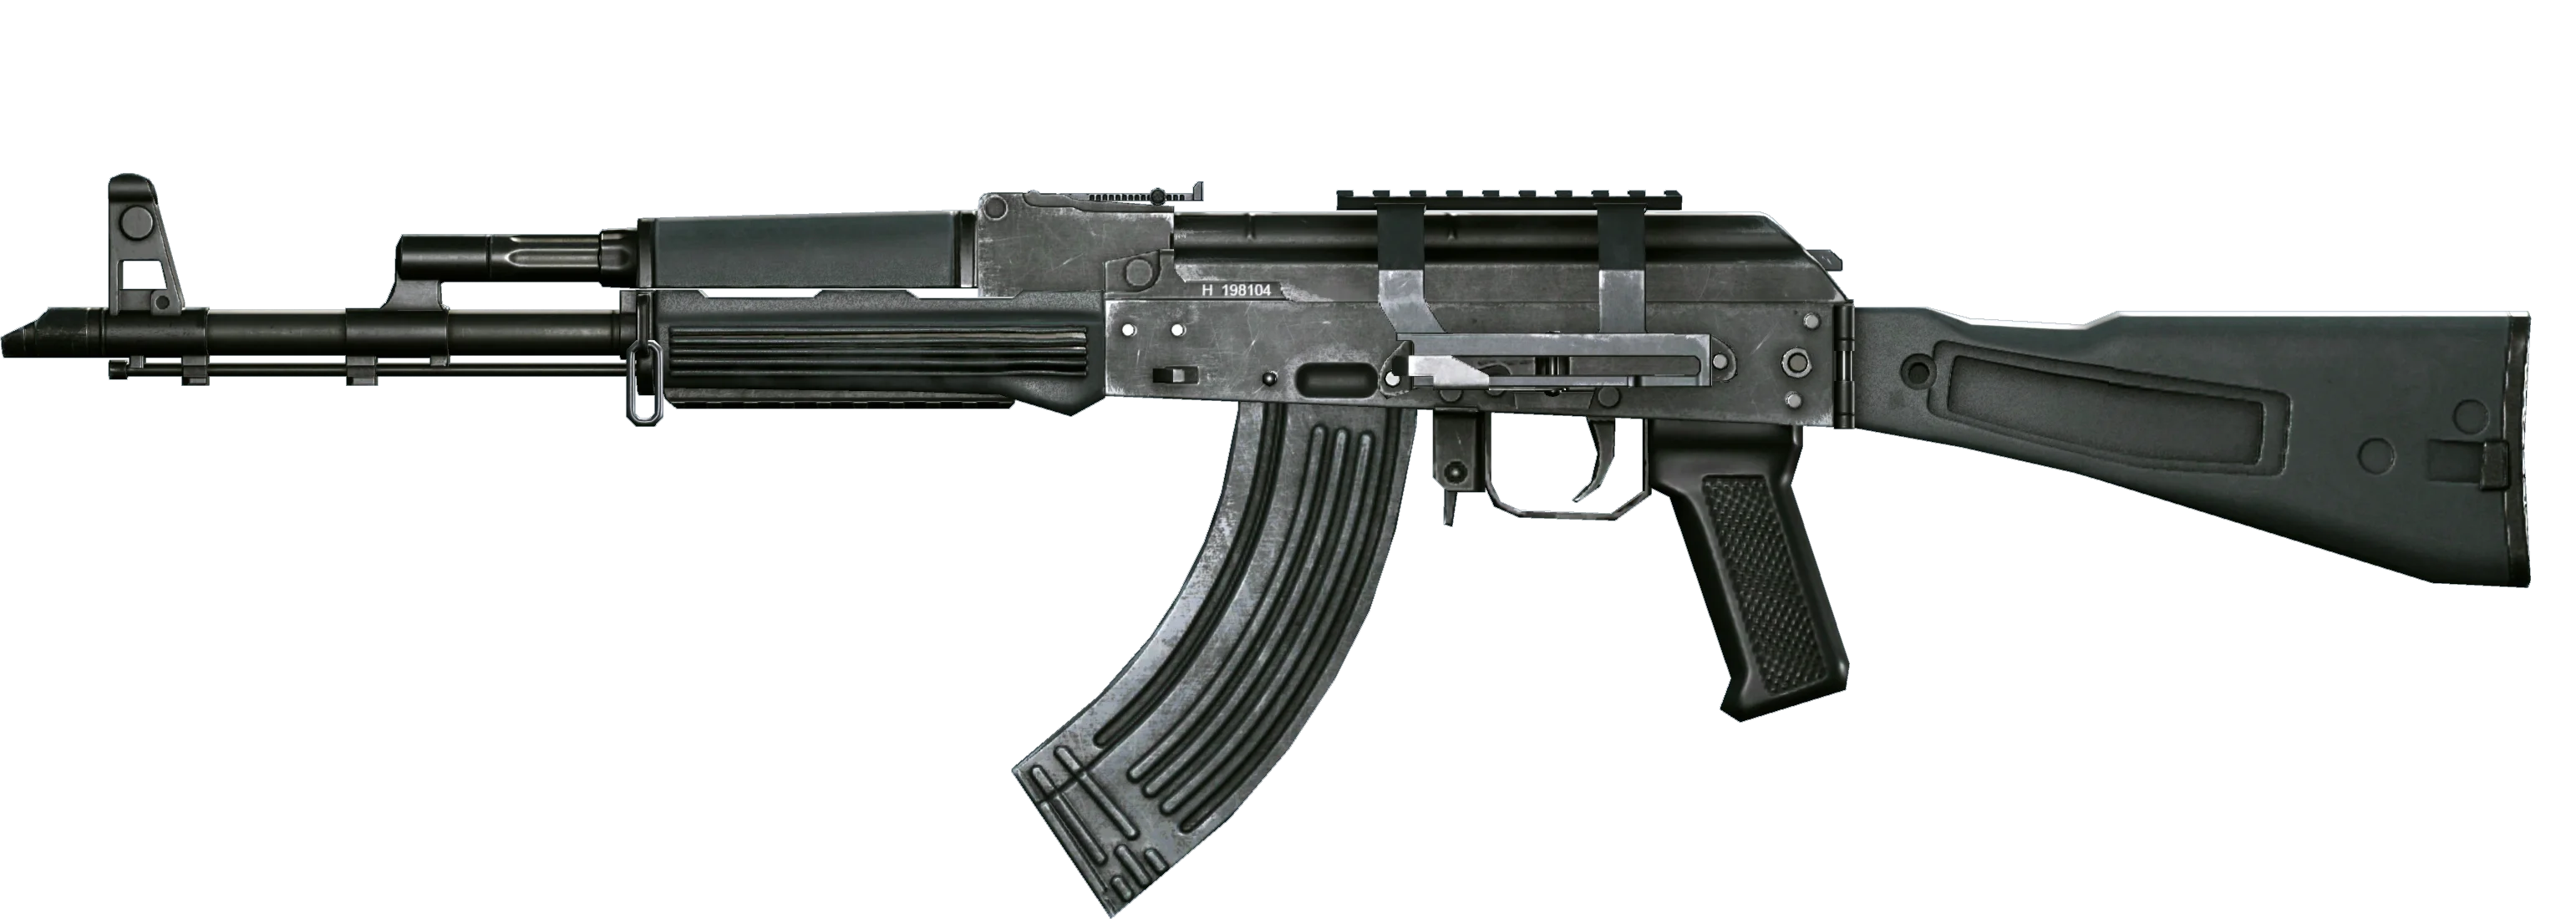 AK в Warface — почему так популярен и как его получить - фото 6